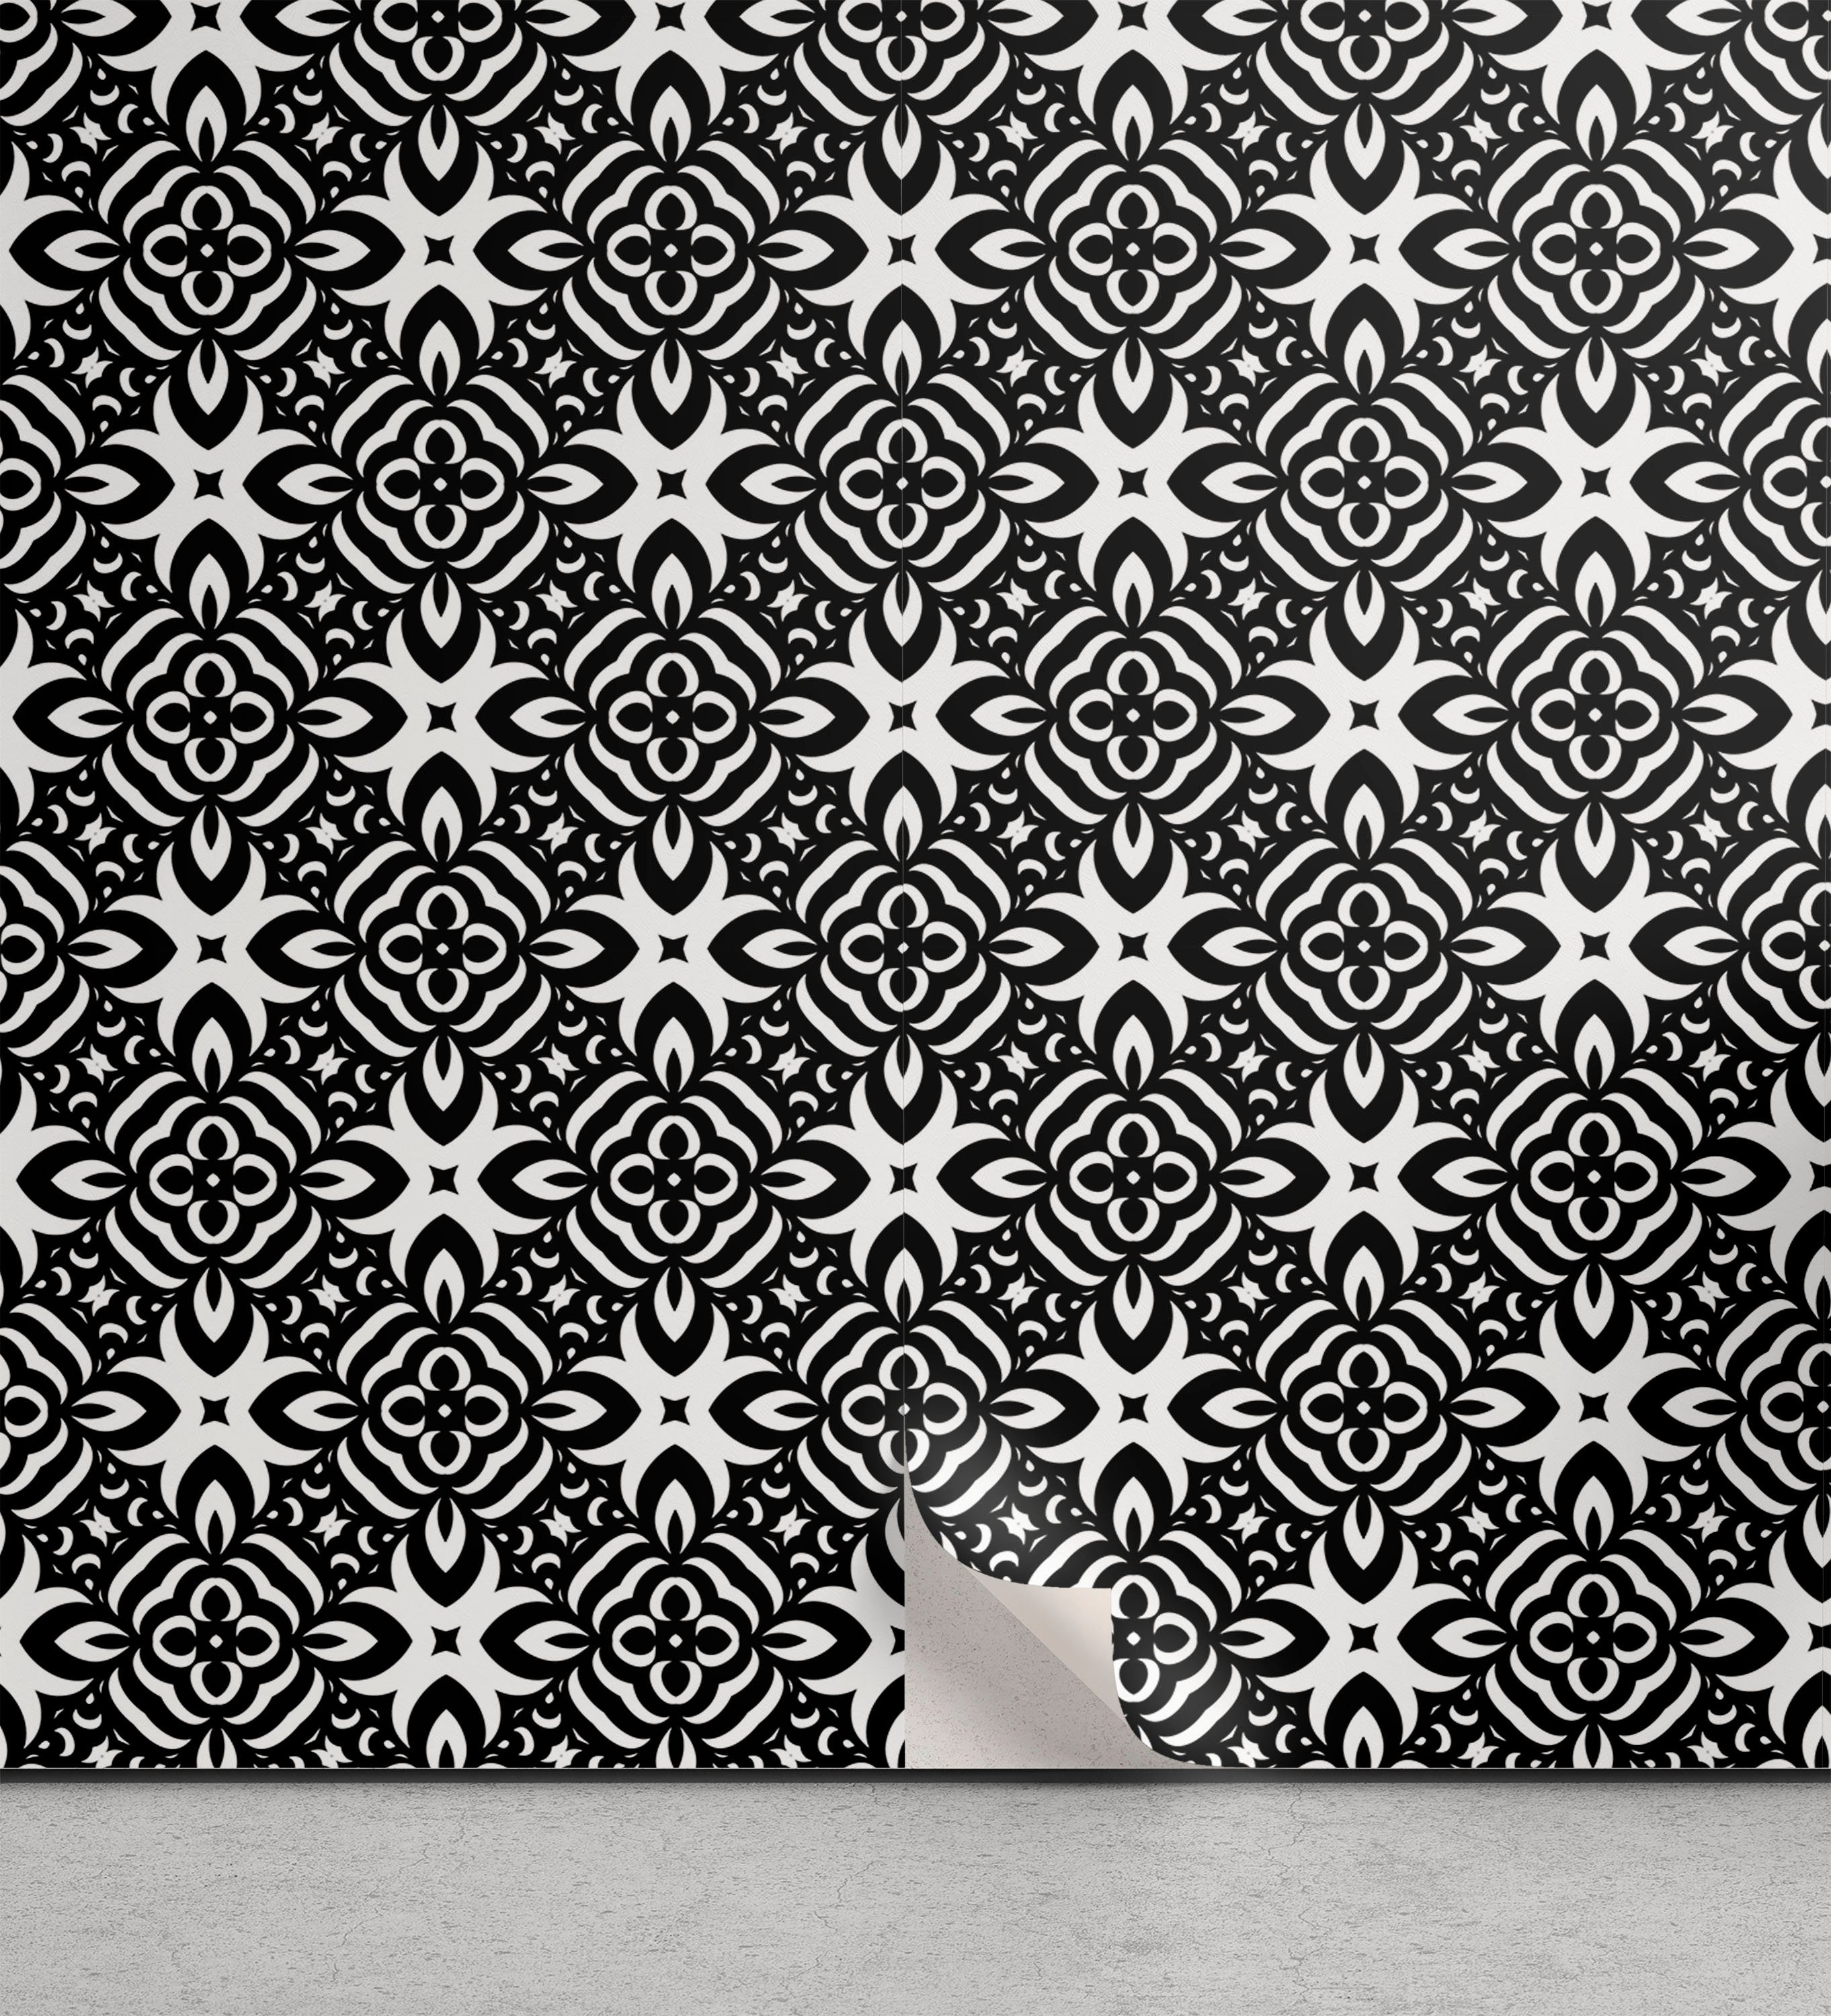 Abakuhaus Vinyltapete selbstklebendes Wohnzimmer Küchenakzent, Schwarz und weiß monochrome-Details